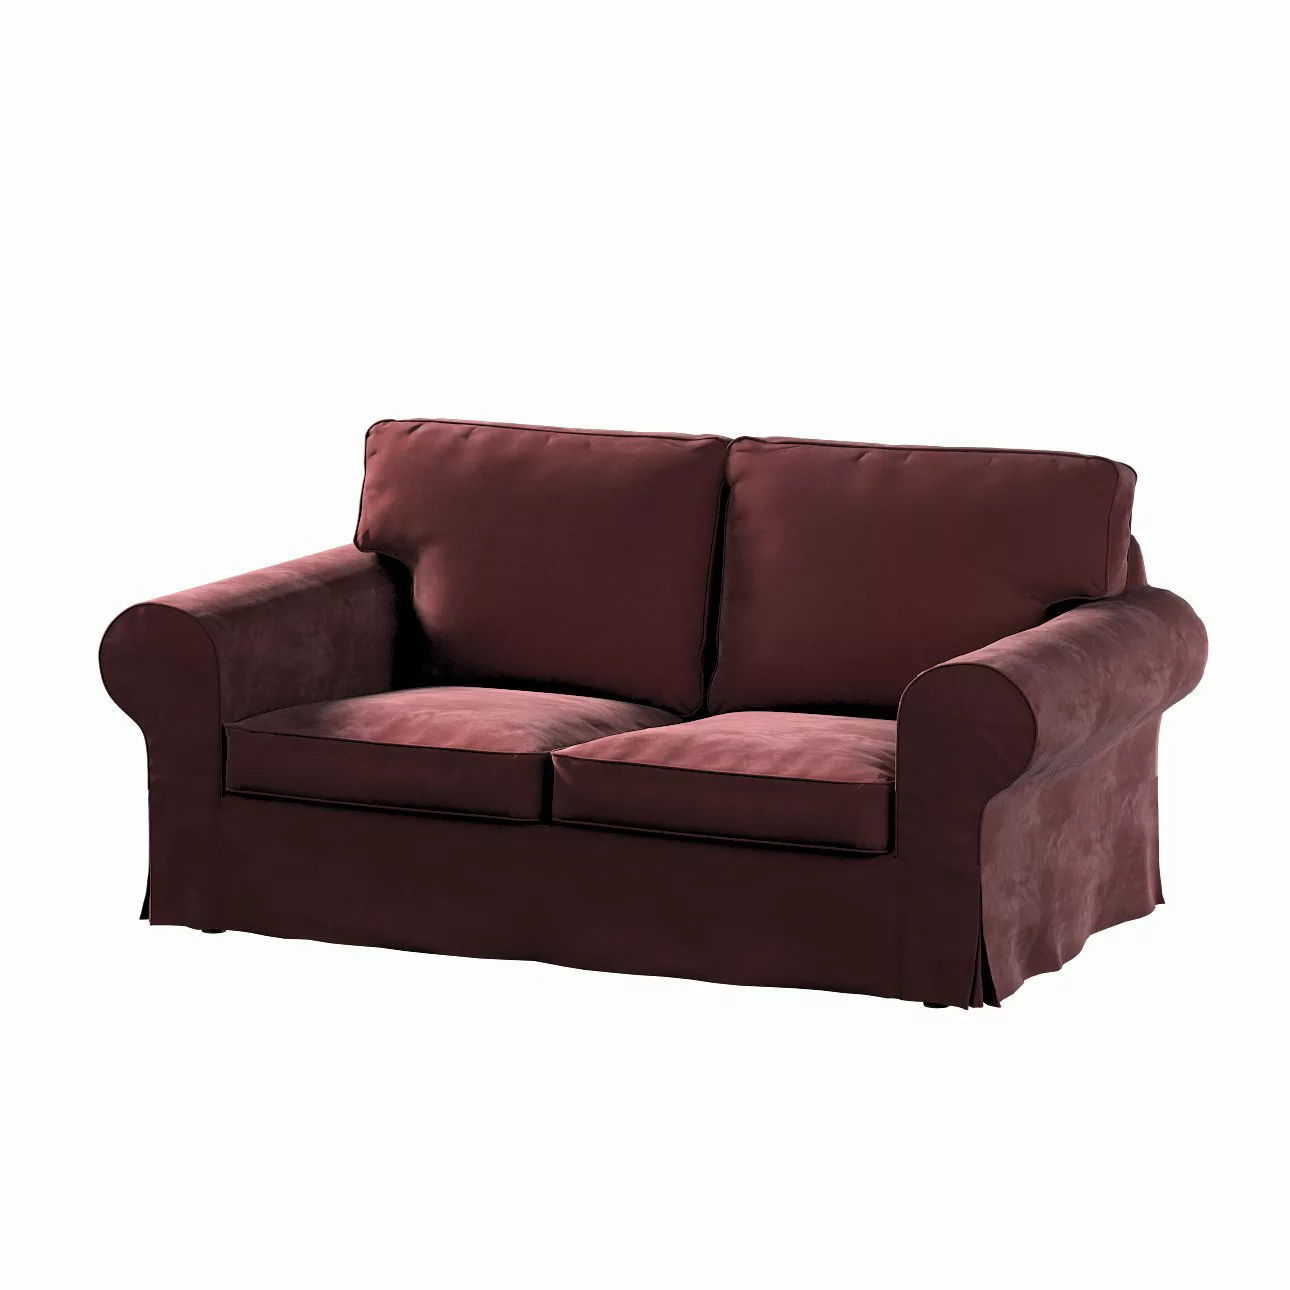 Bezug für Ektorp 2-Sitzer Sofa nicht ausklappbar, bordeaux, Sofabezug für günstig online kaufen